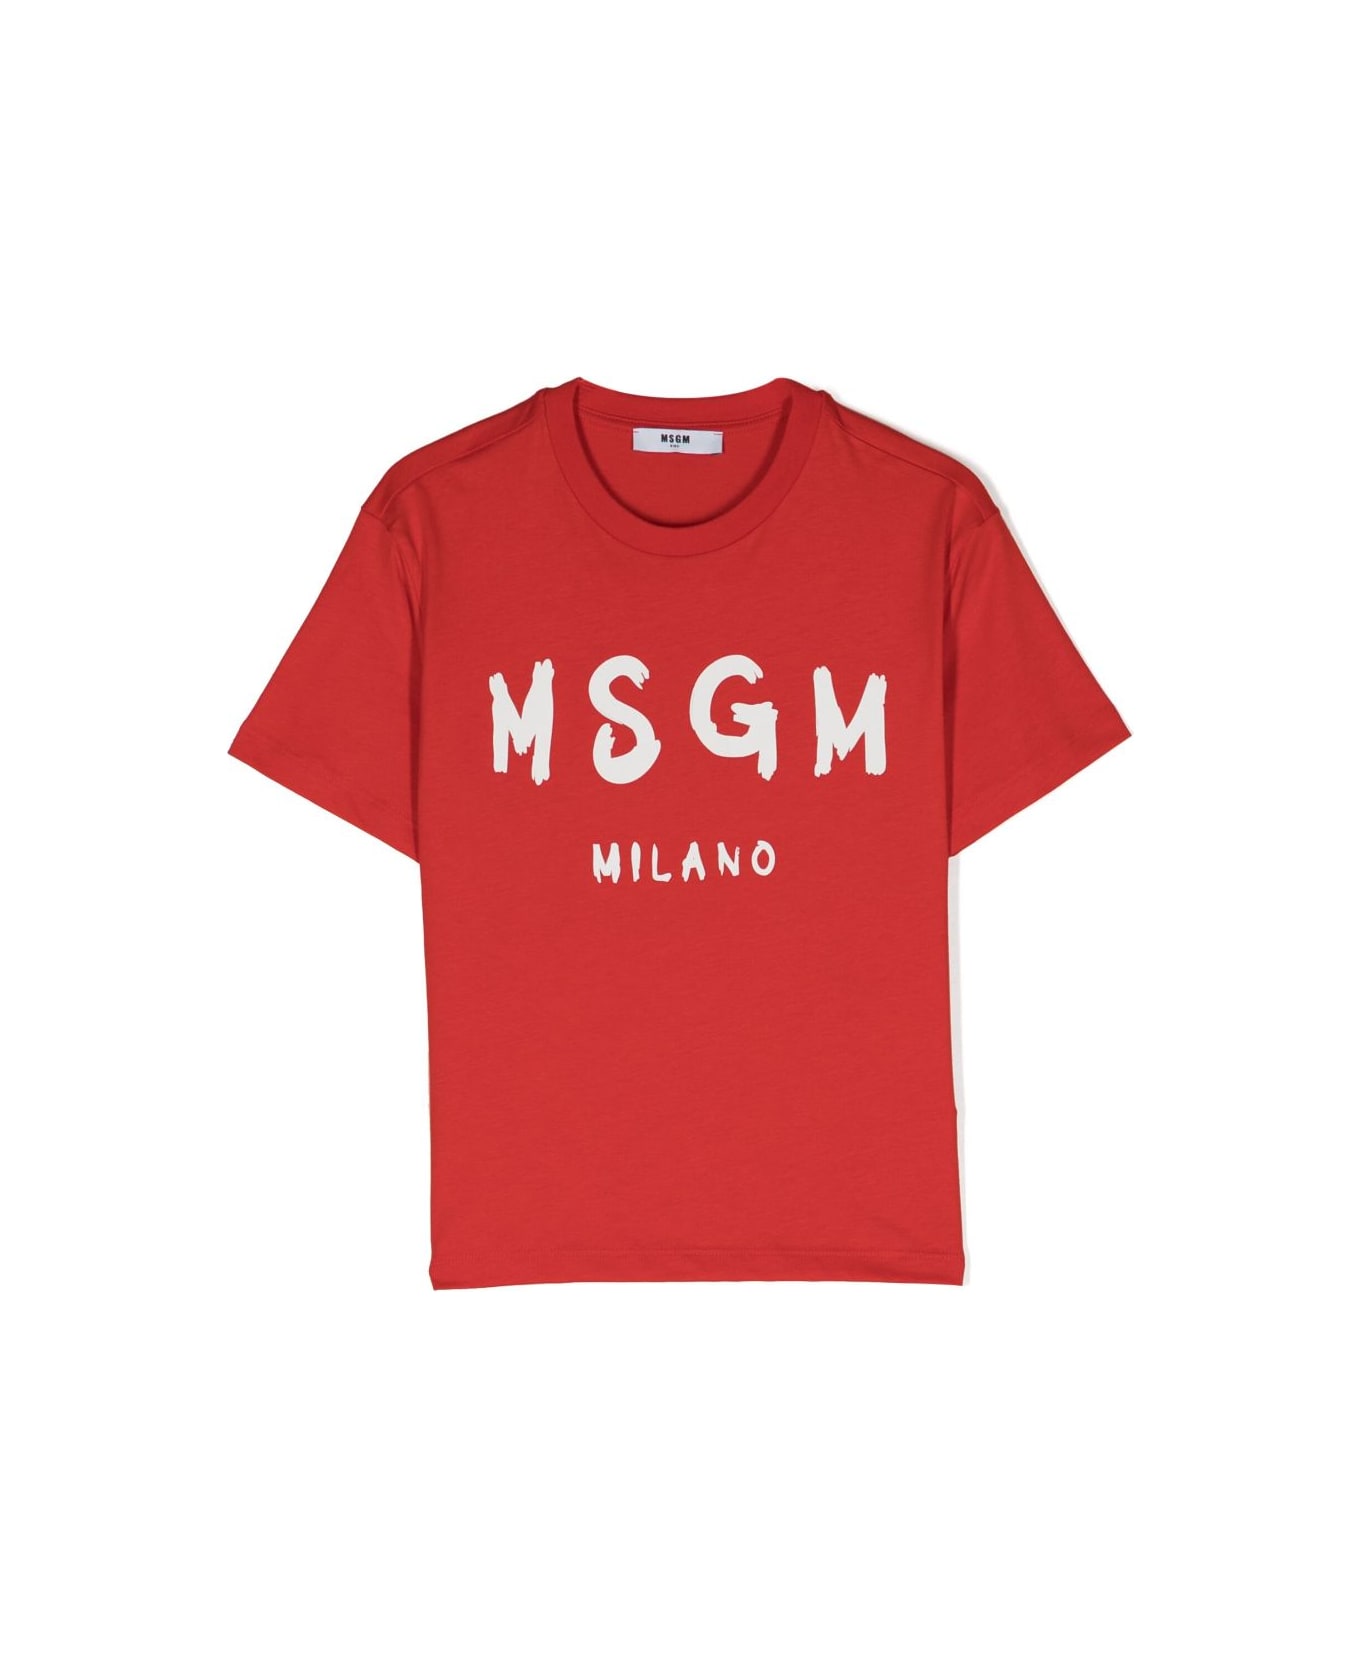 MSGM T-shirt Rossa In Jersey Di Cotone Bambino - Rosso